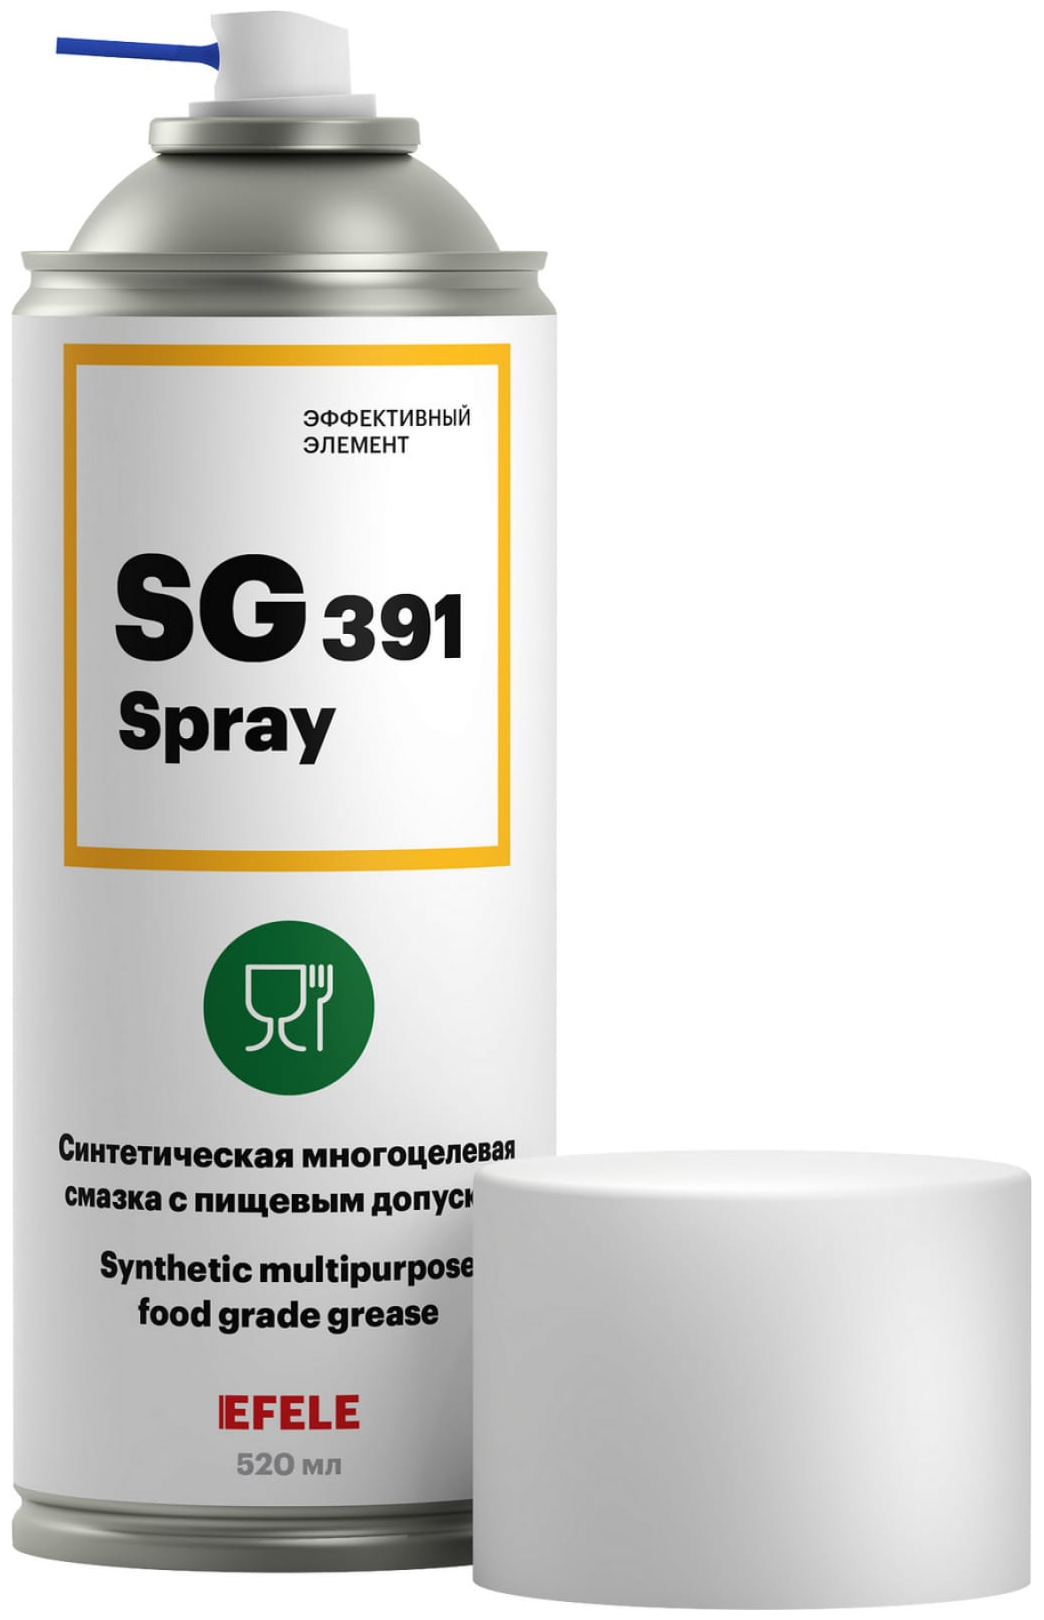 Синтетическая многоцелевая смазка c пищевым допуском EFELE SG-391 SPRAY, 520 мл